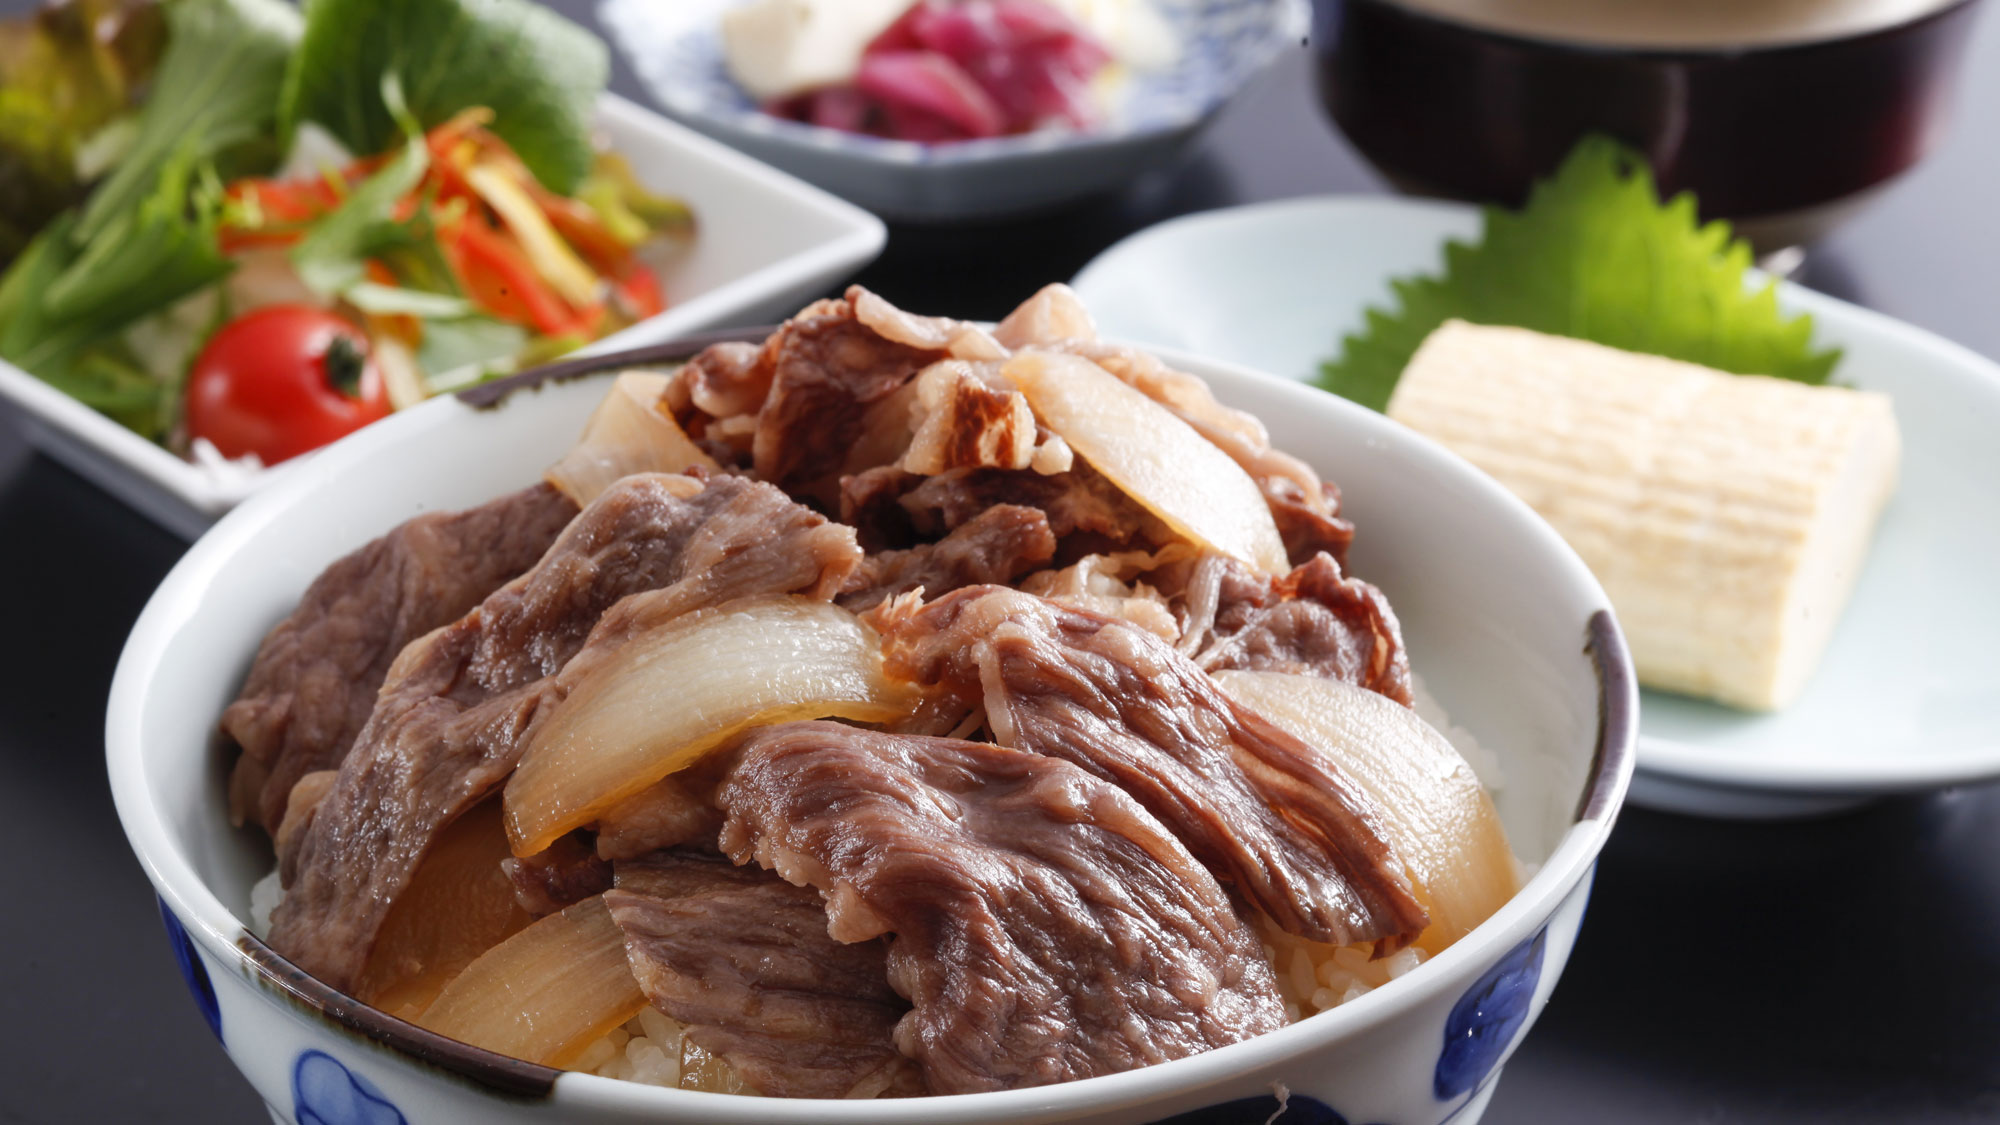 素材の良さを十分に引き出した淡路島牛丼を、ふわふわ出汁巻きとともにお召し上がりください。